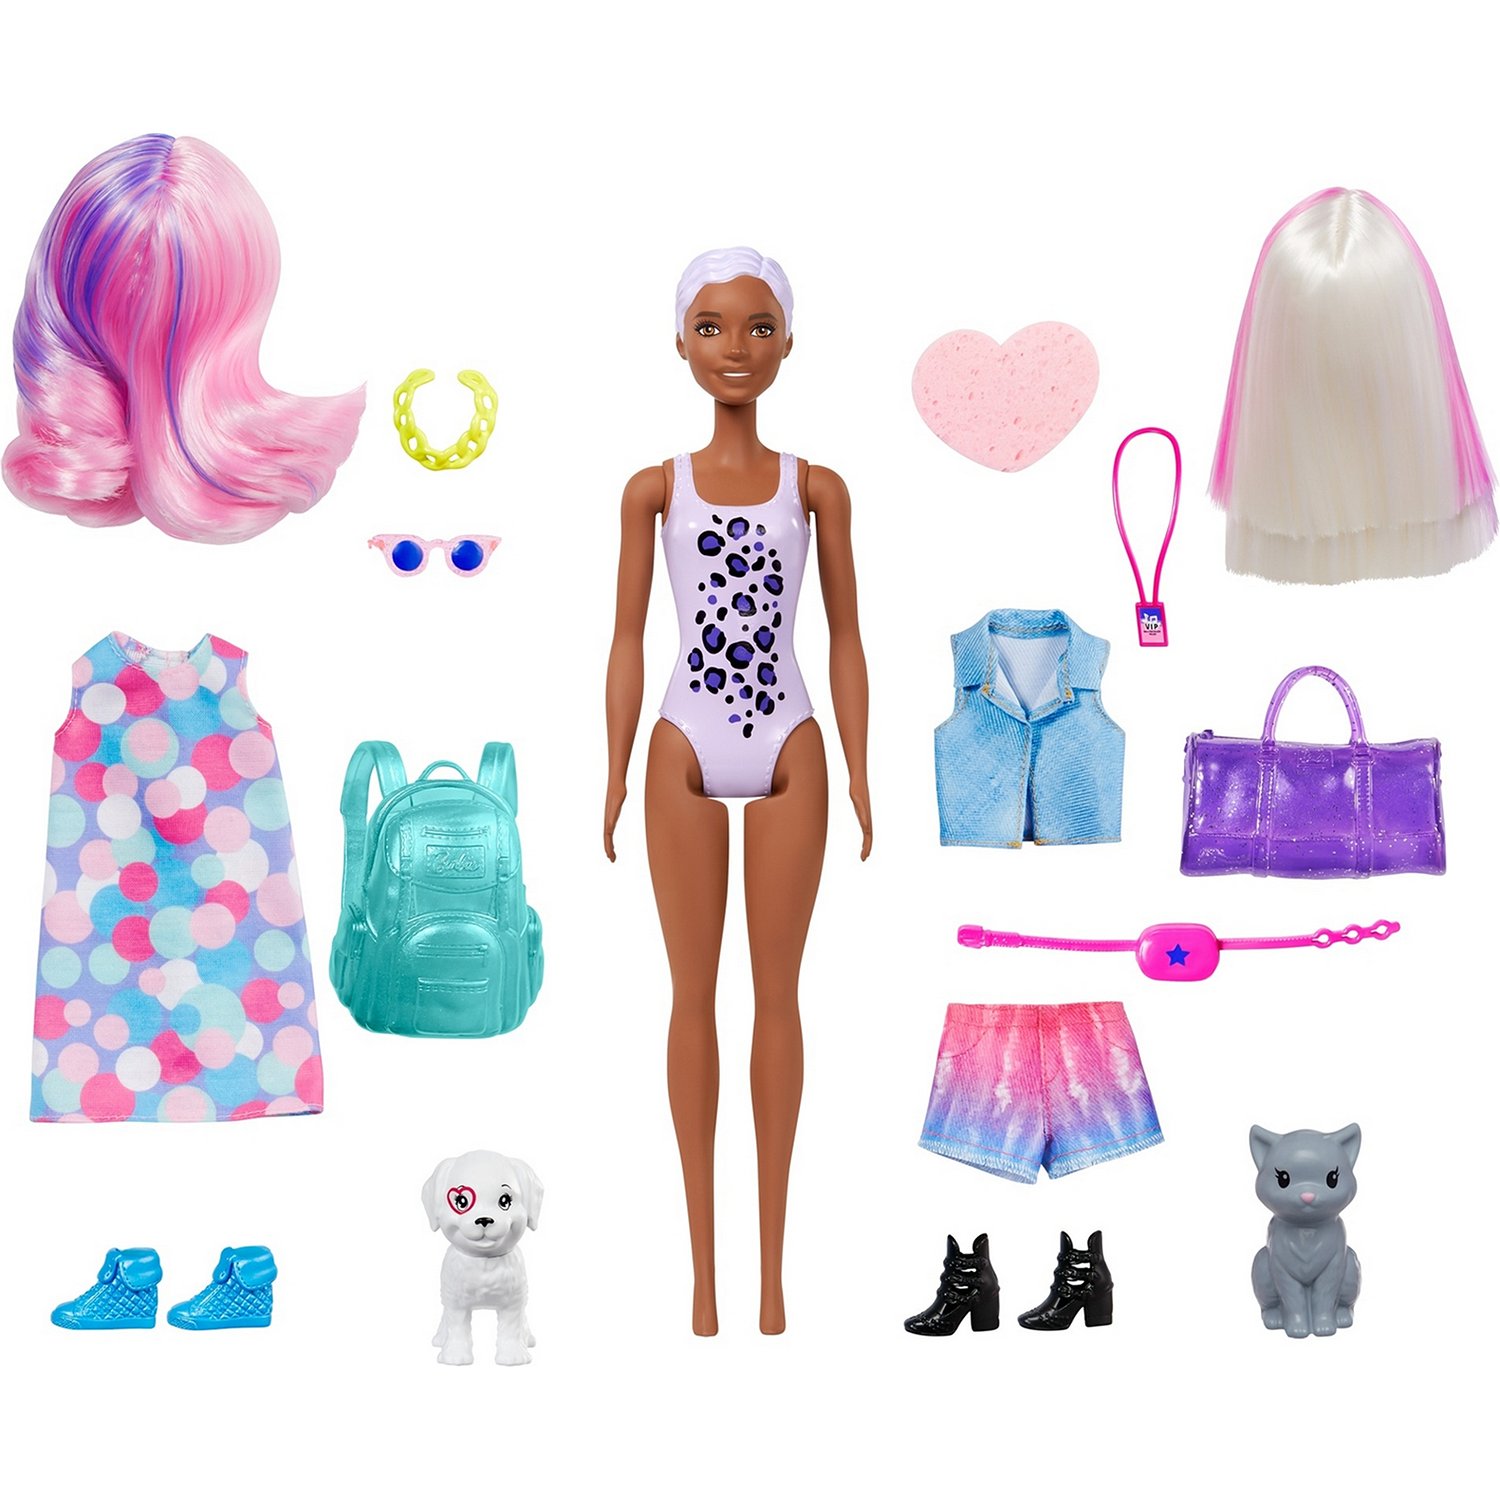 Кукла Barbie Невероятный сюрприз "Карнавал и концерт"в непрозрачной упаковке, GPD57